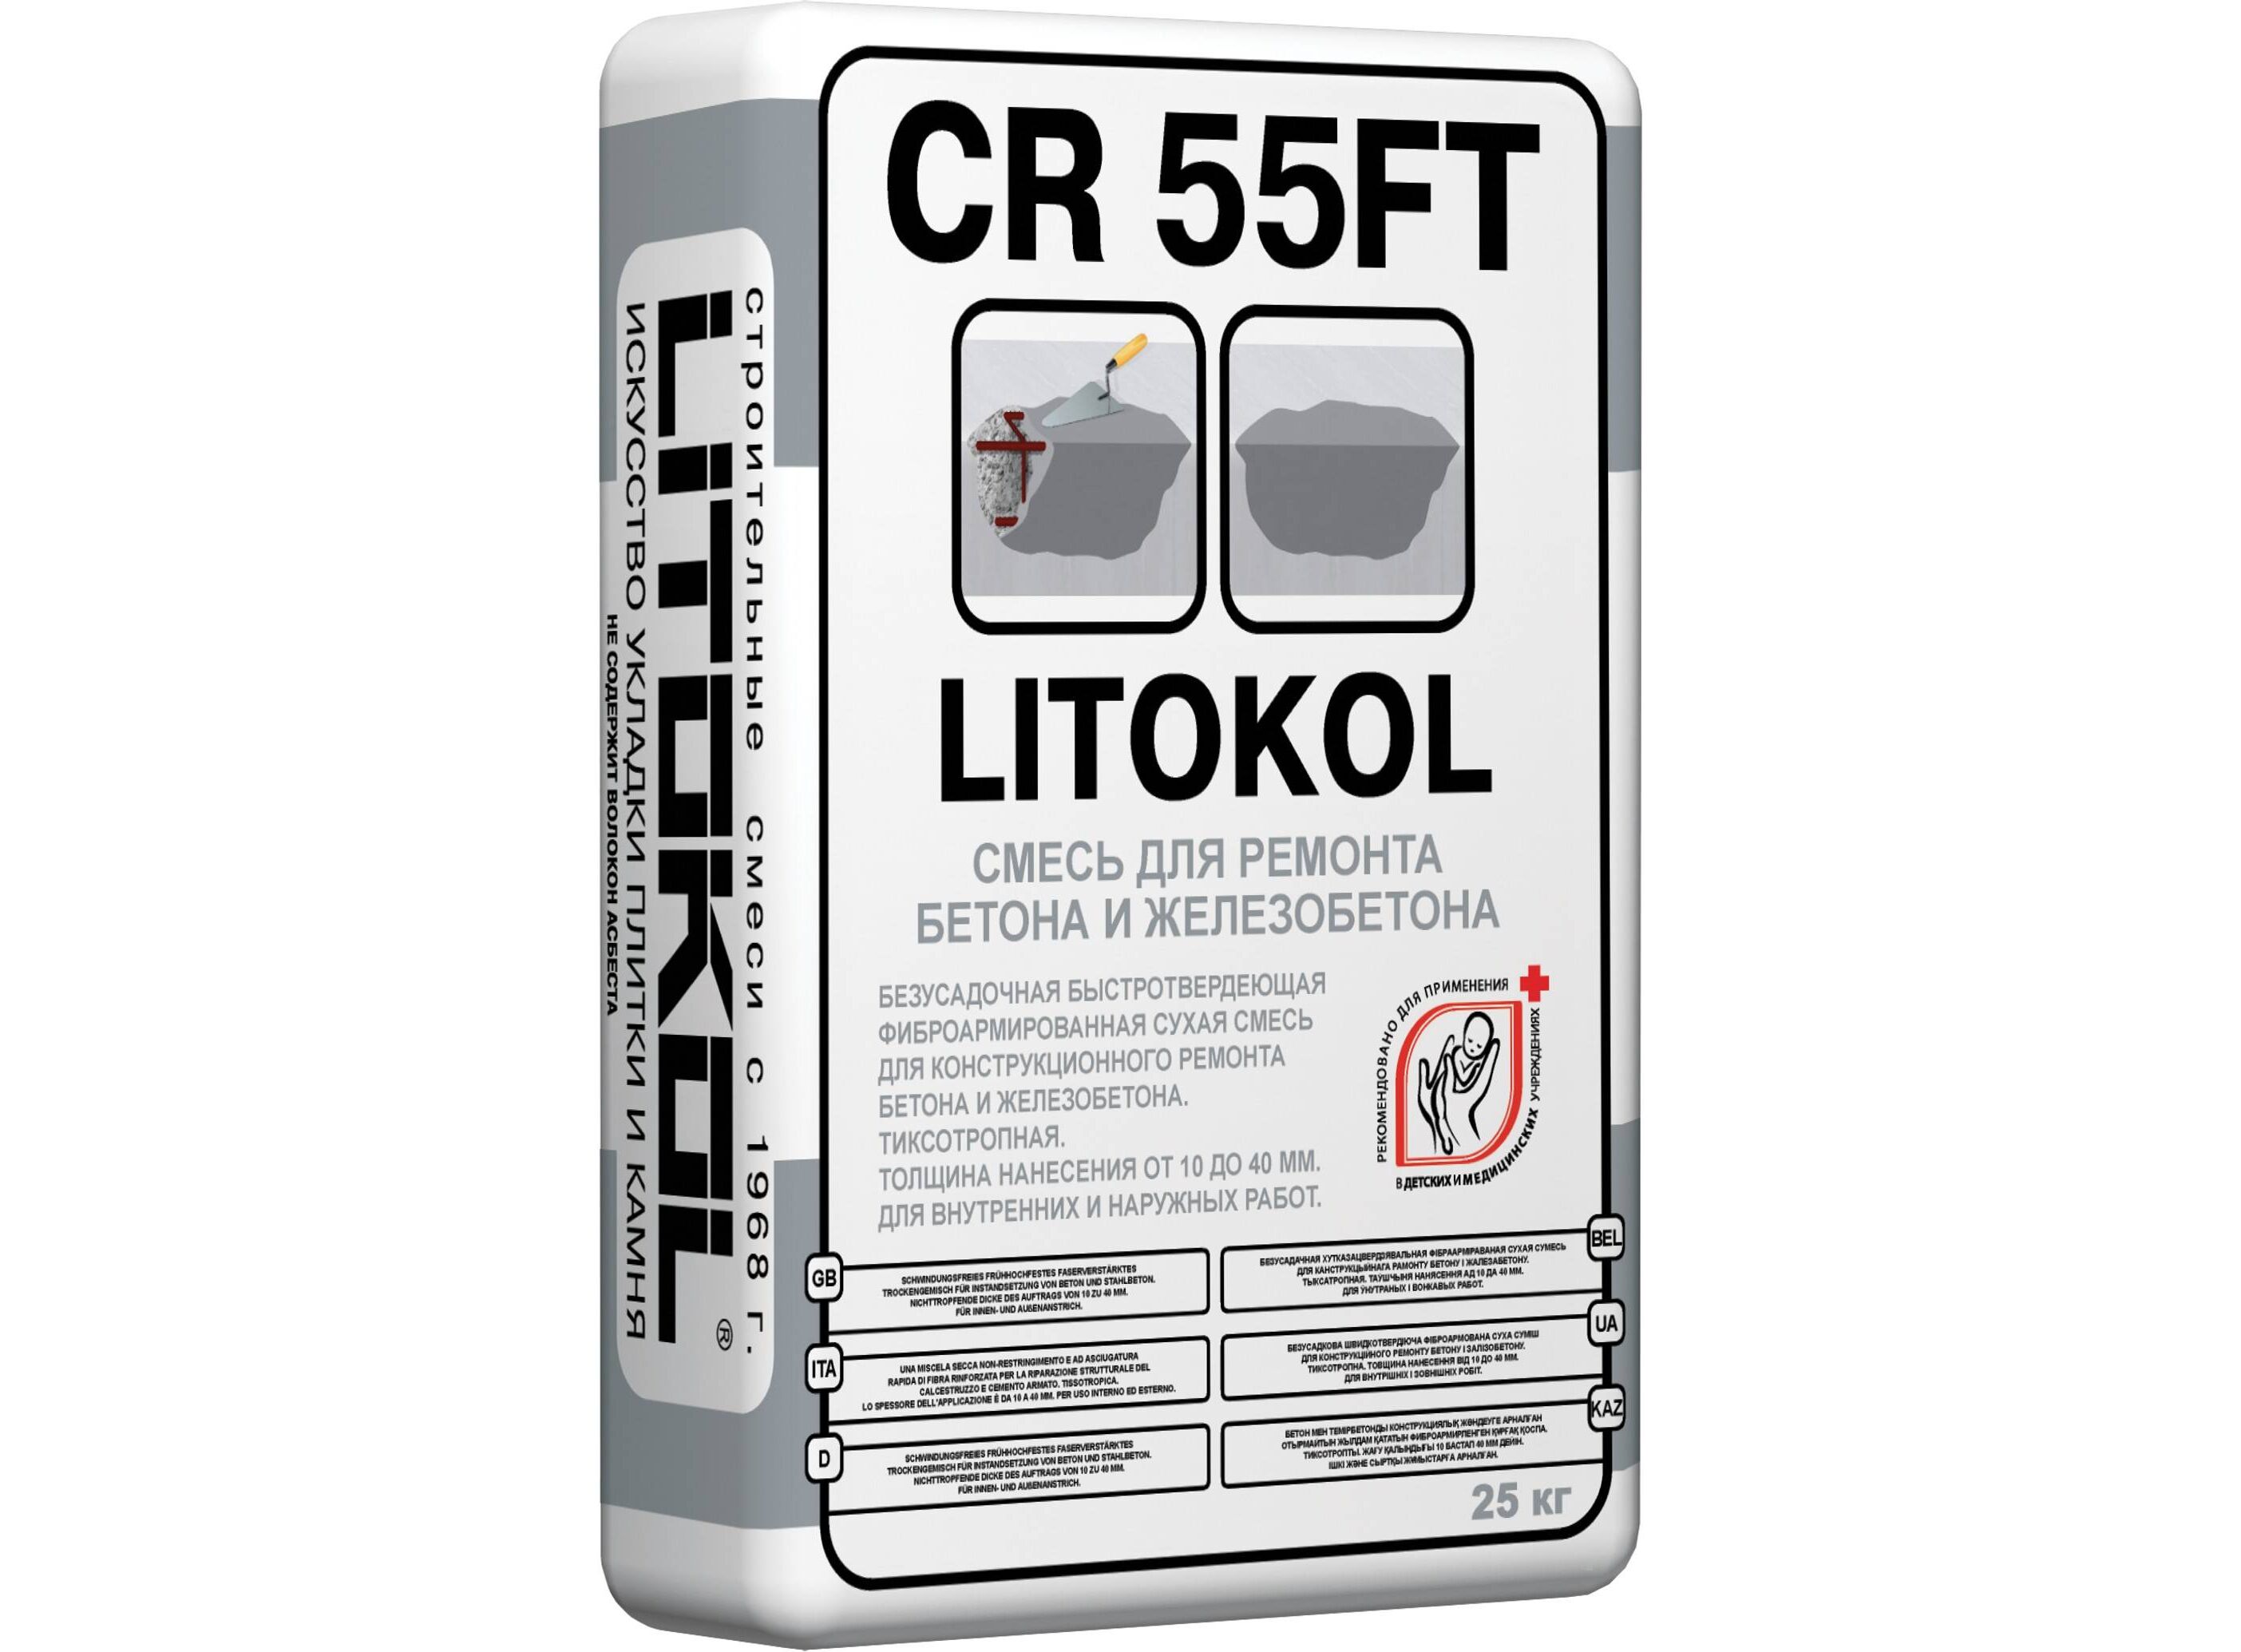 Ремонтная смесь 25 кг. 55ft Litokol CR 25кг. Смесь ремонтная 25кг CR 55ft Fine Litokol. Litokol CR 55ft характеристики. Литокол cr55ft смесь для ремонта бетона и железобетона.